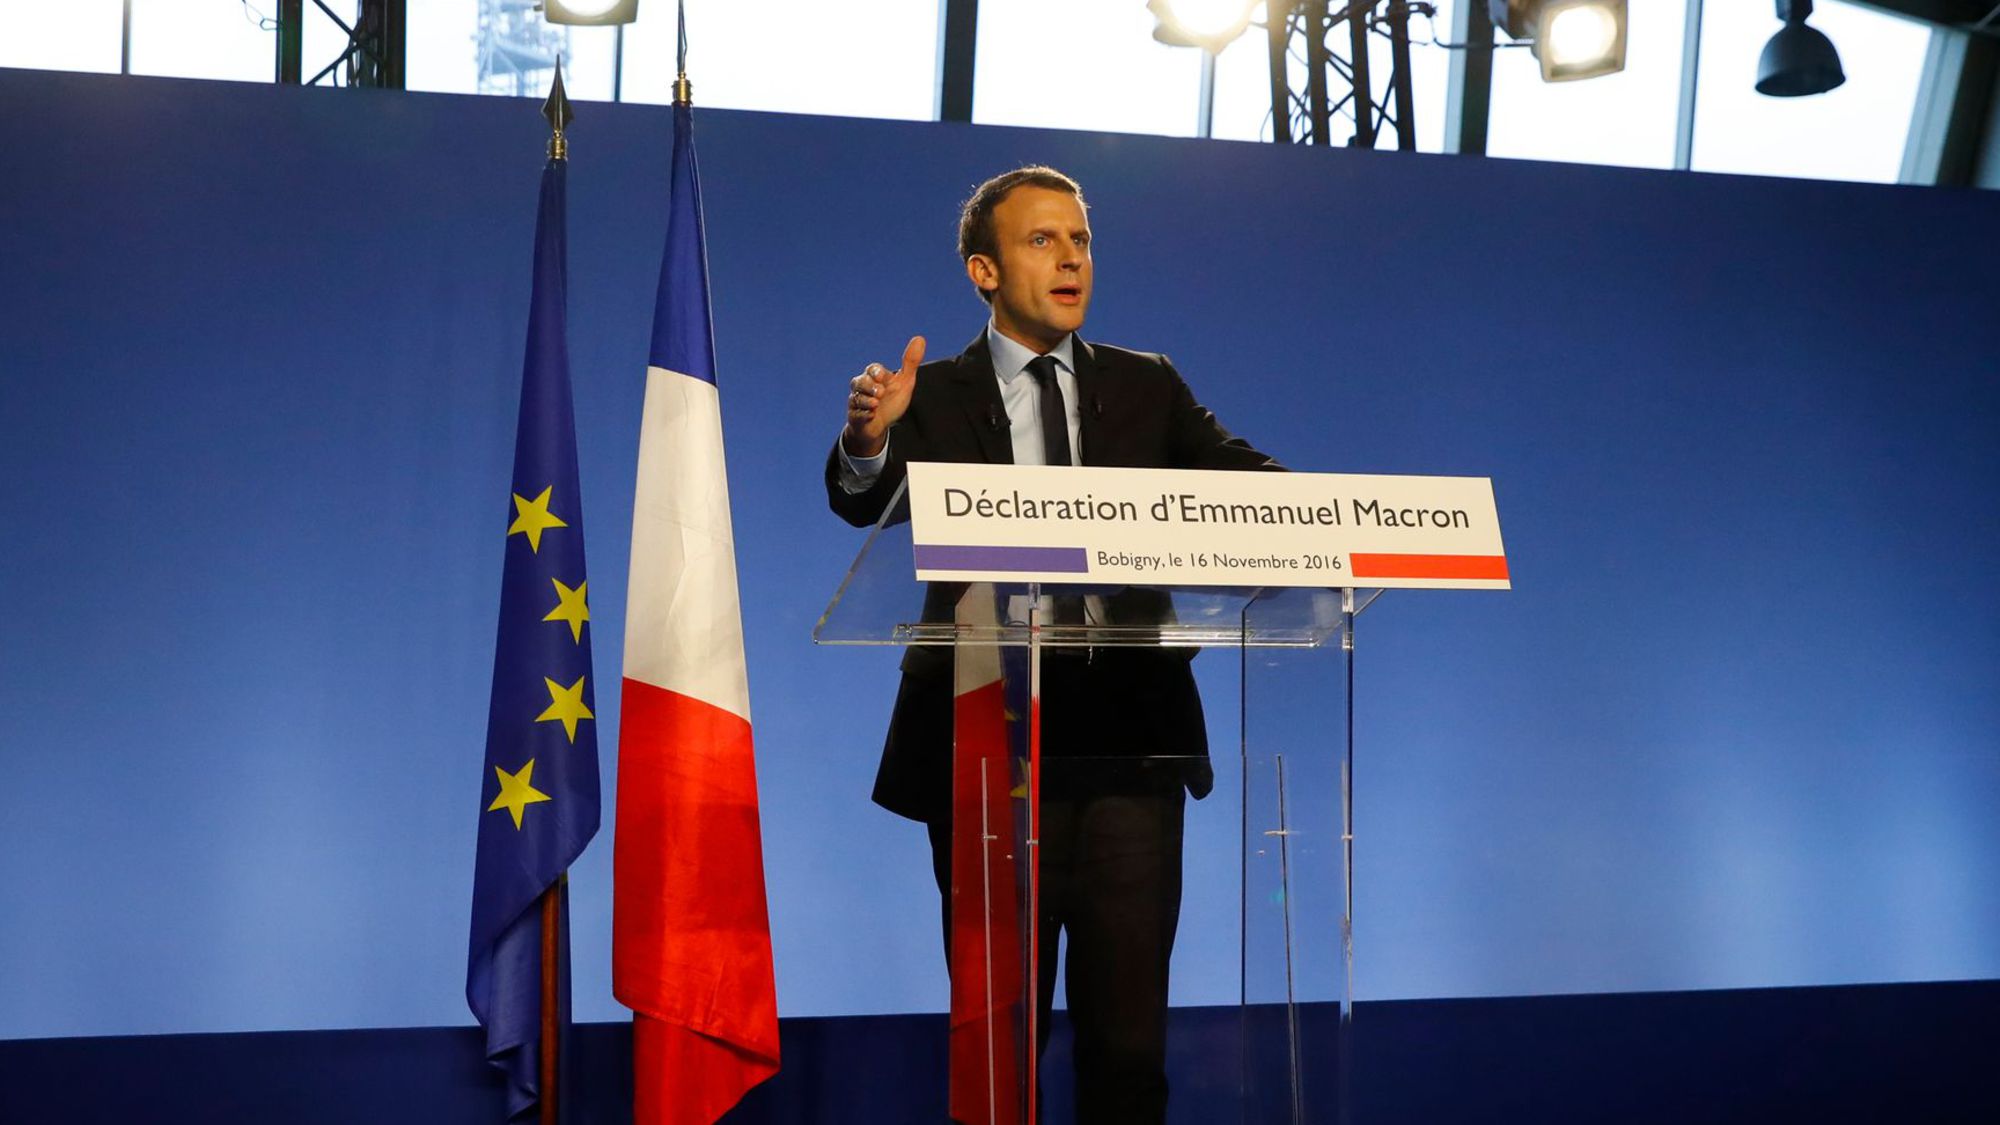 Macron enterre l'idée de la primaire et dévoile une partie de son programme